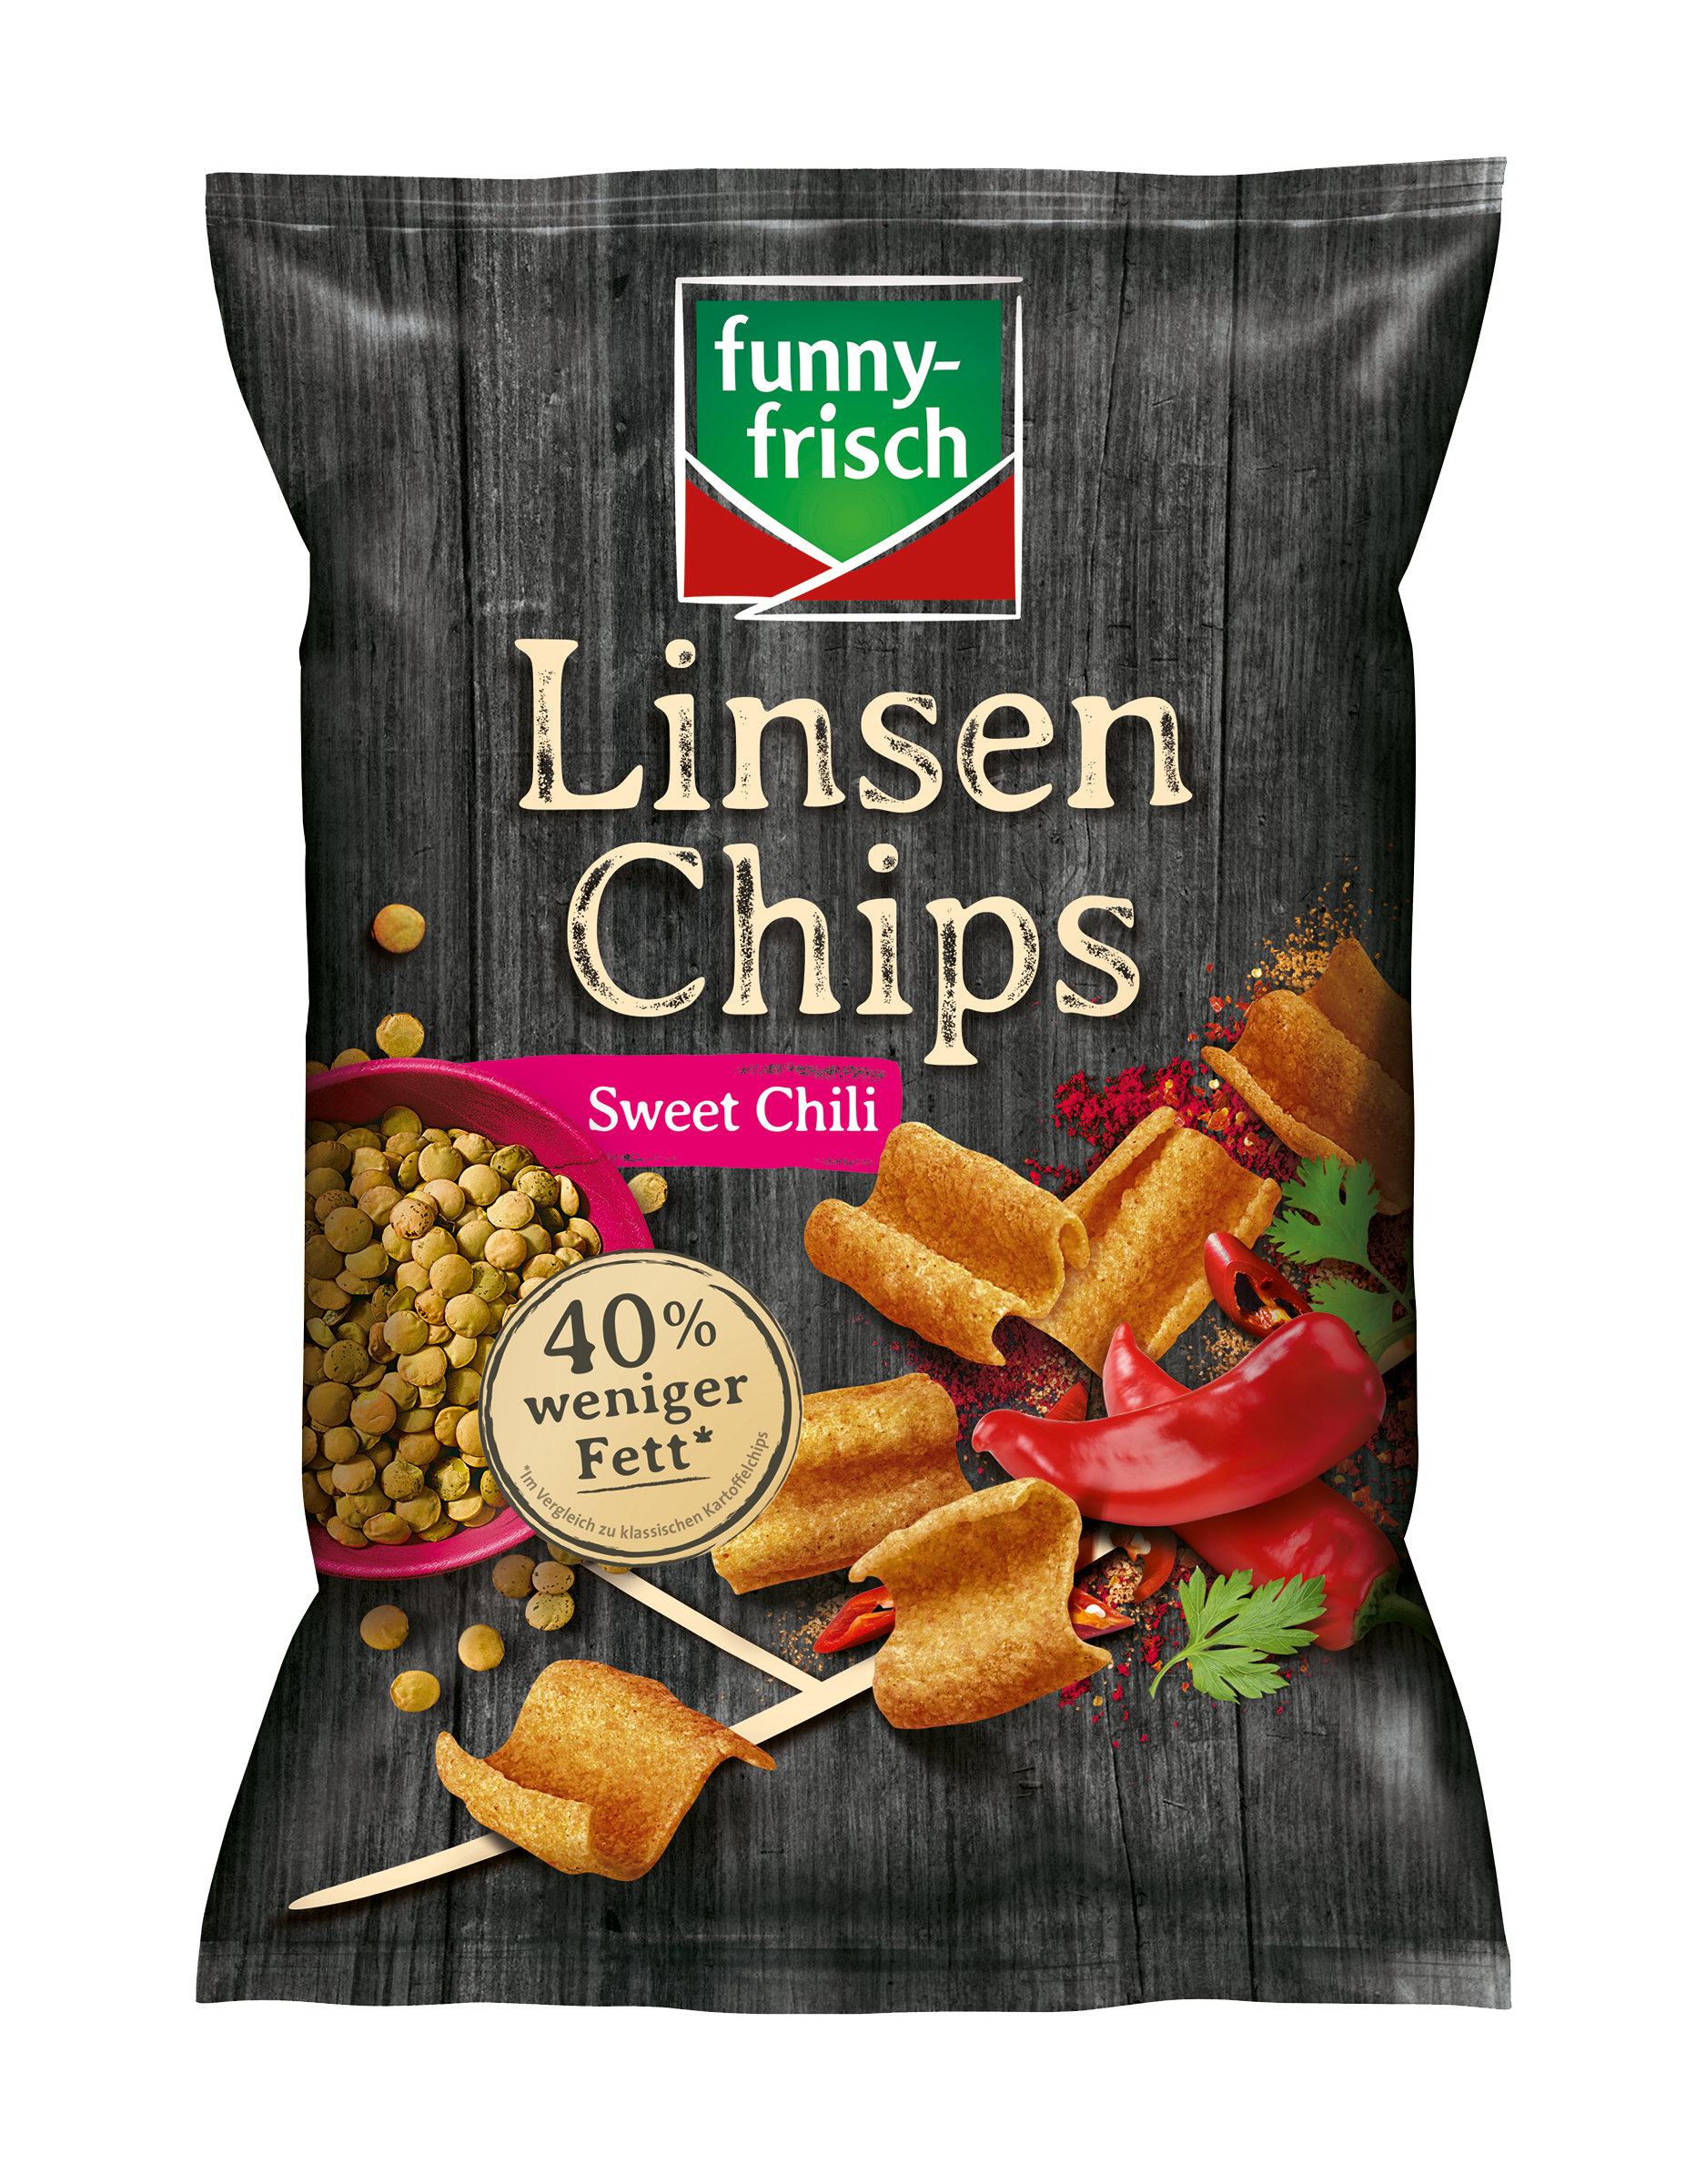 funny-frisch Chipsfrisch Linsen Chips Sweet Chili 90g